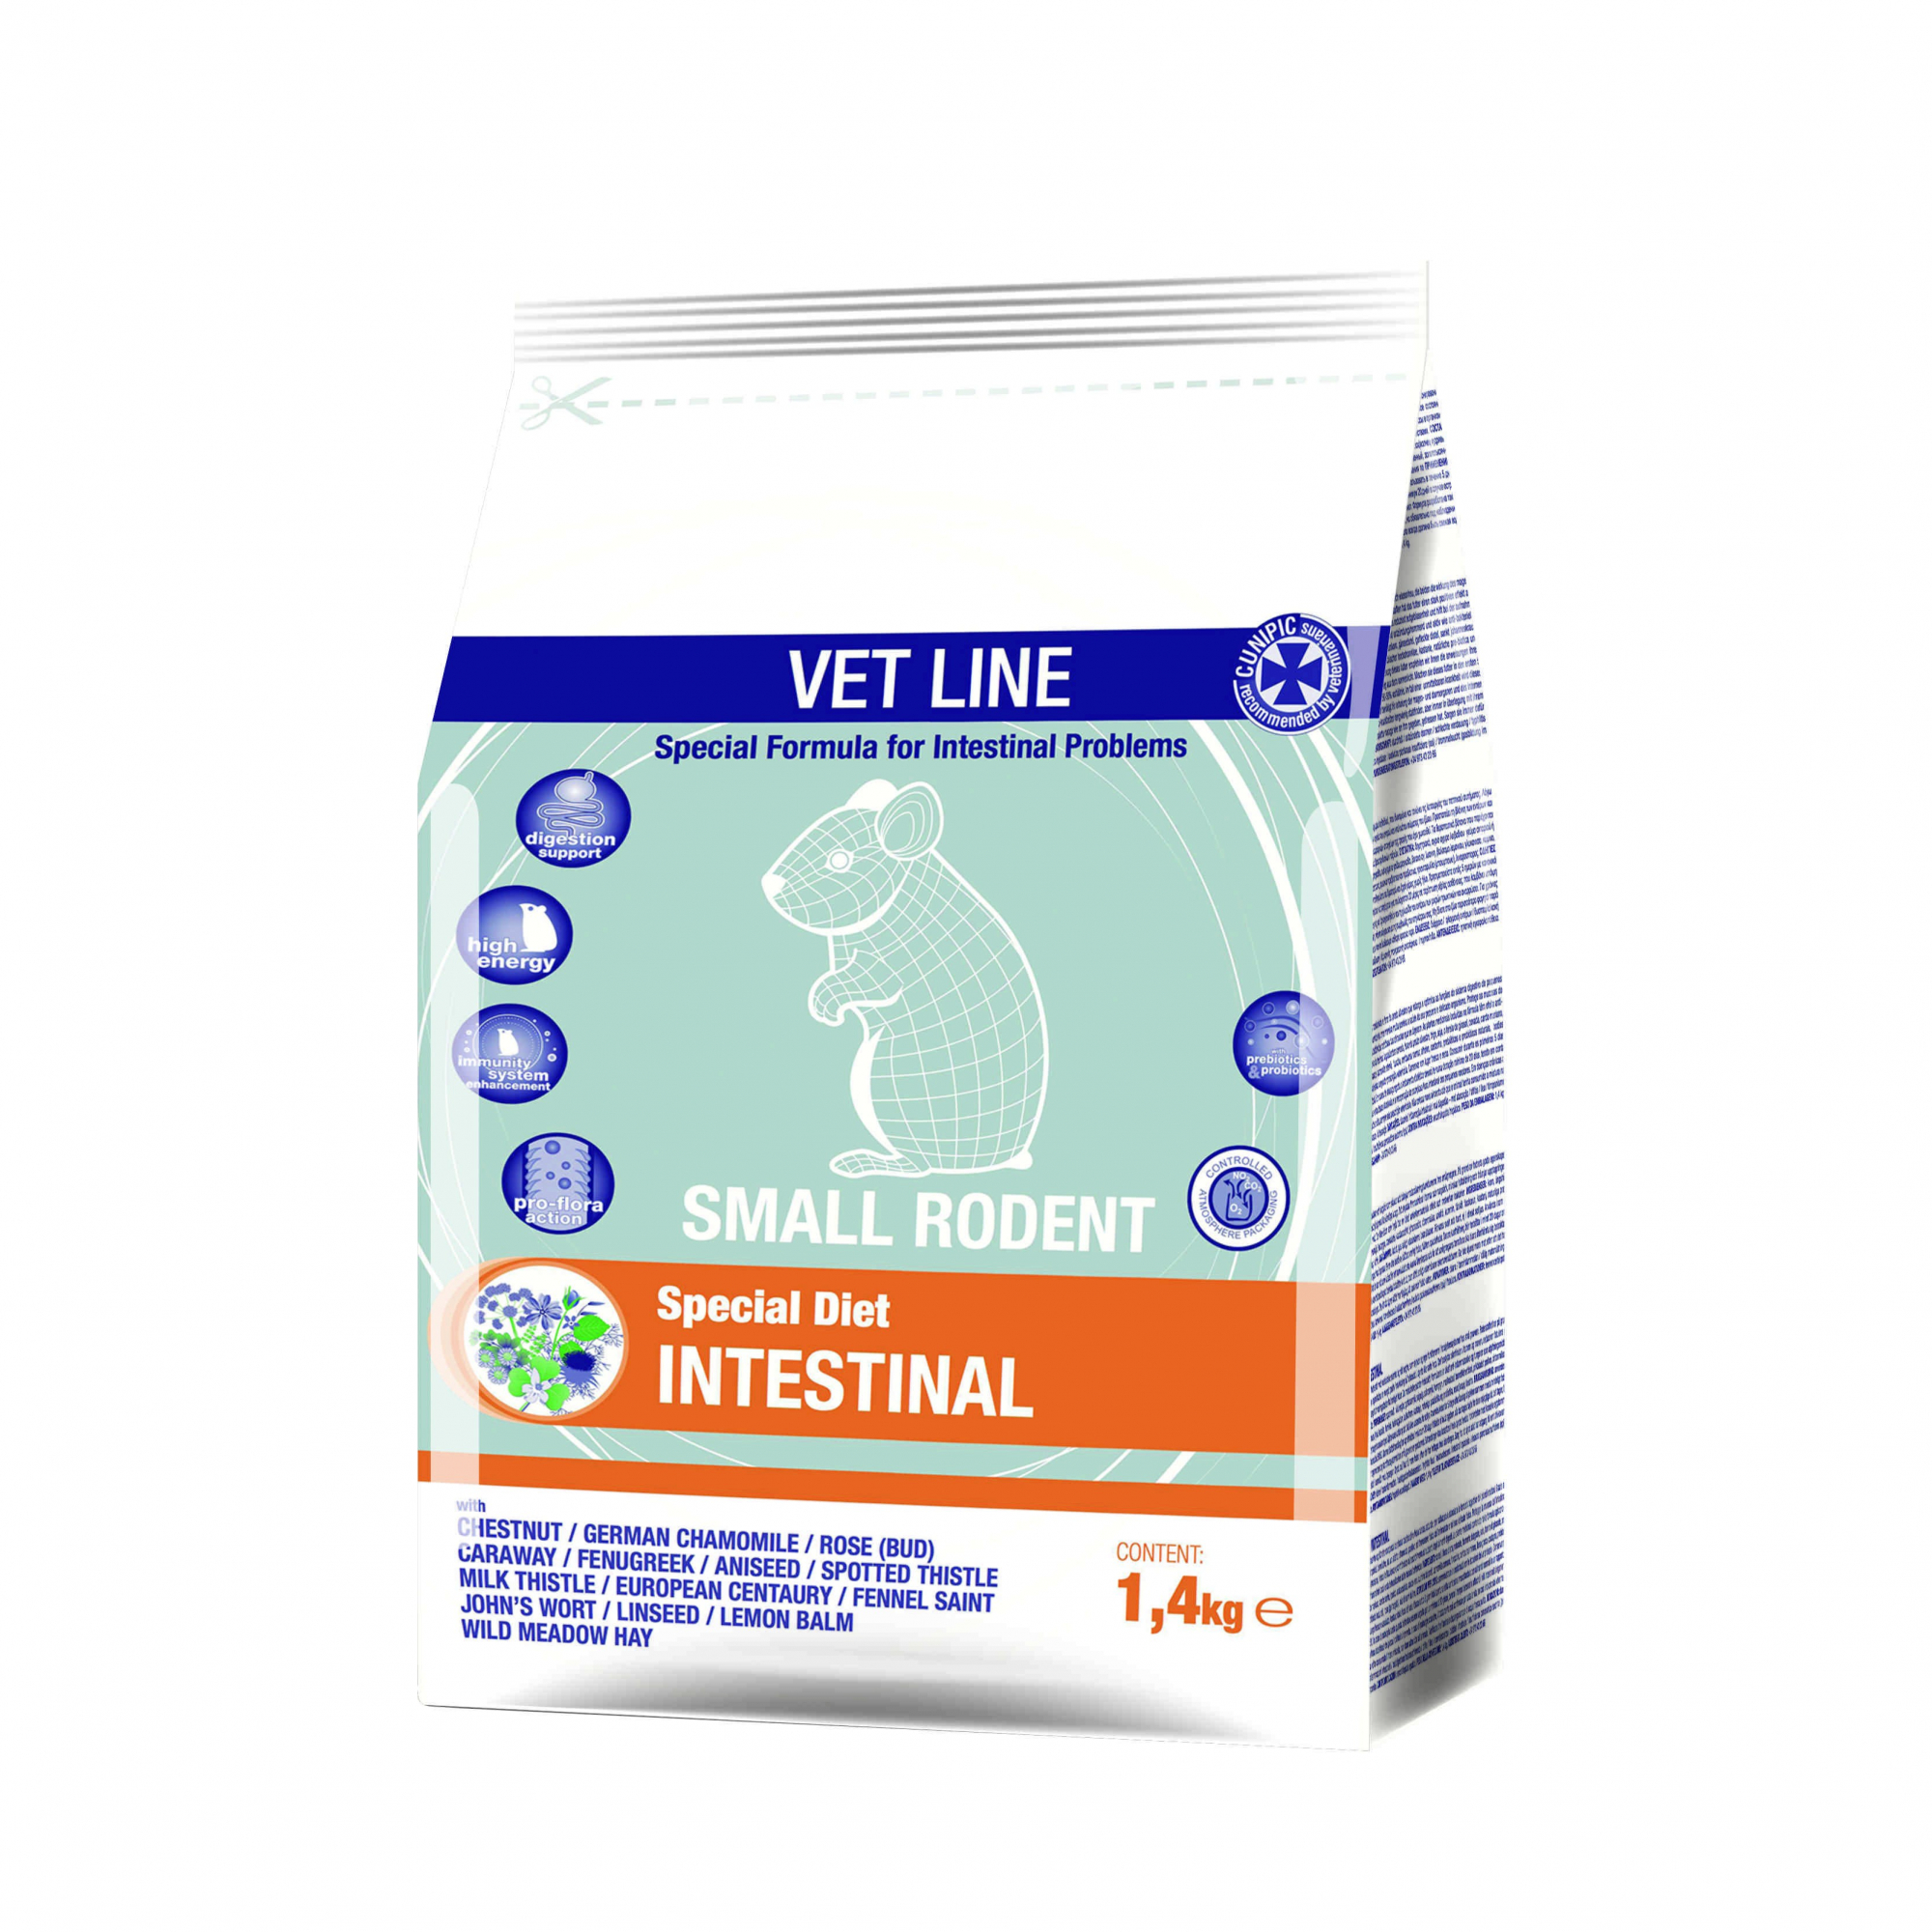 Cunipic Vetline Intestinal Formula per il sostegno del sistema digestivo per piccoli roditori